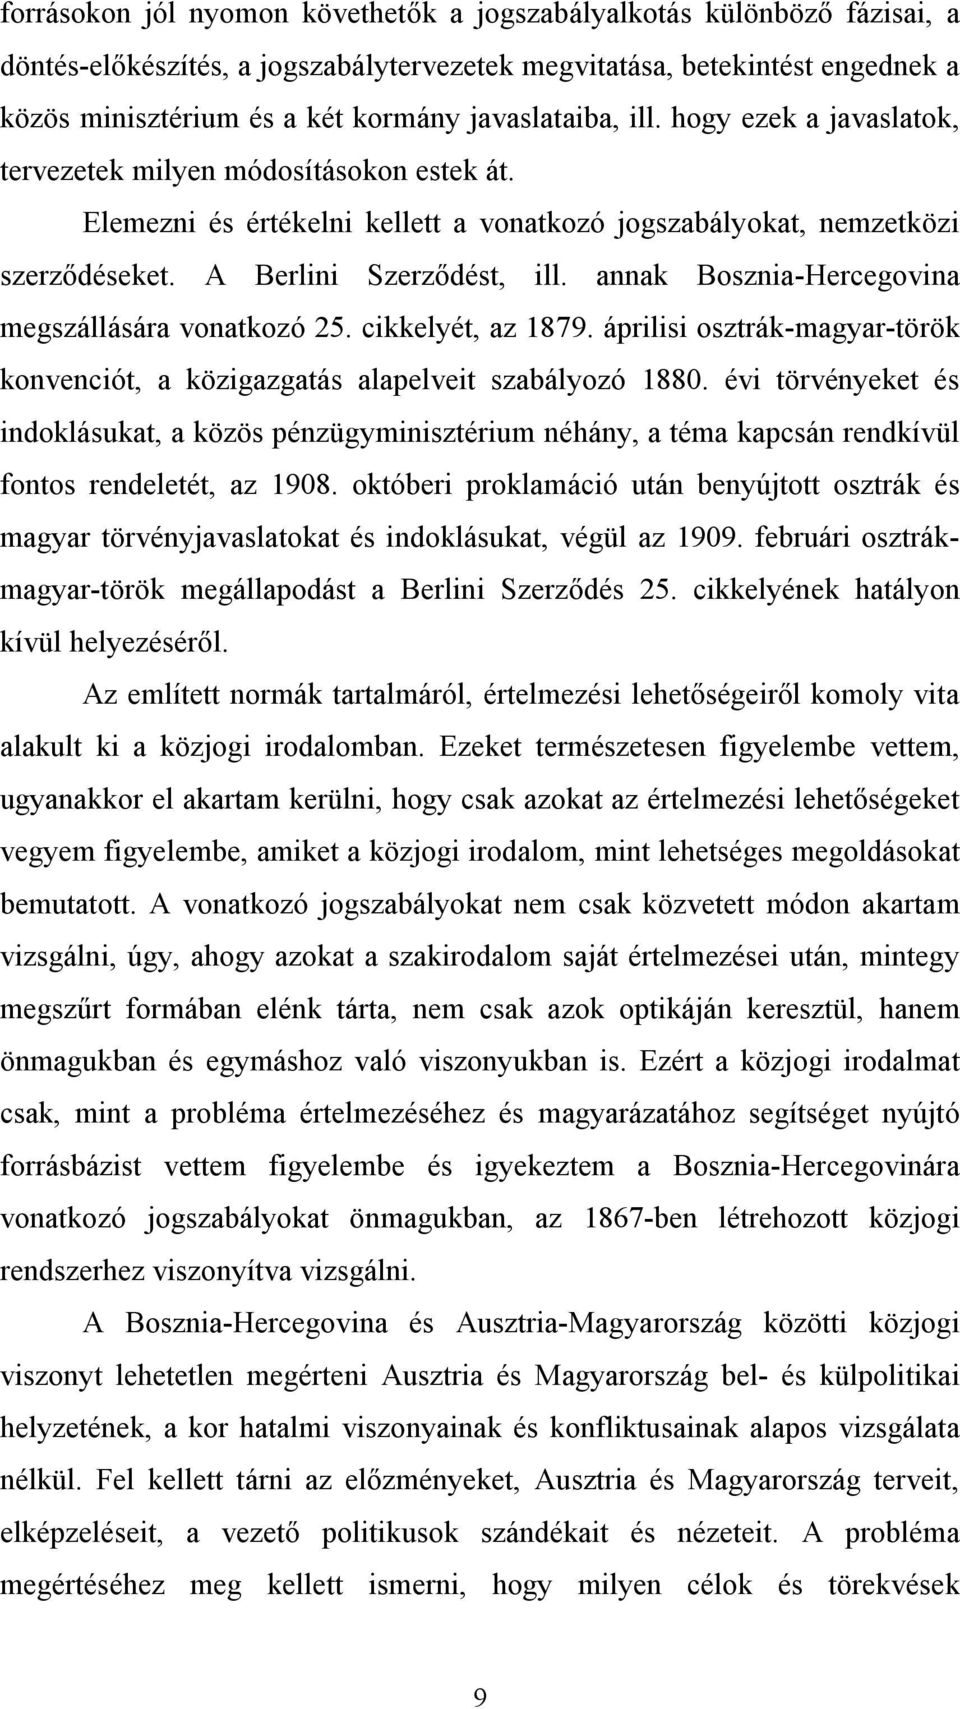 annak Bosznia-Hercegovina megszállására vonatkozó 25. cikkelyét, az 1879. áprilisi osztrák-magyar-török konvenciót, a közigazgatás alapelveit szabályozó 1880.